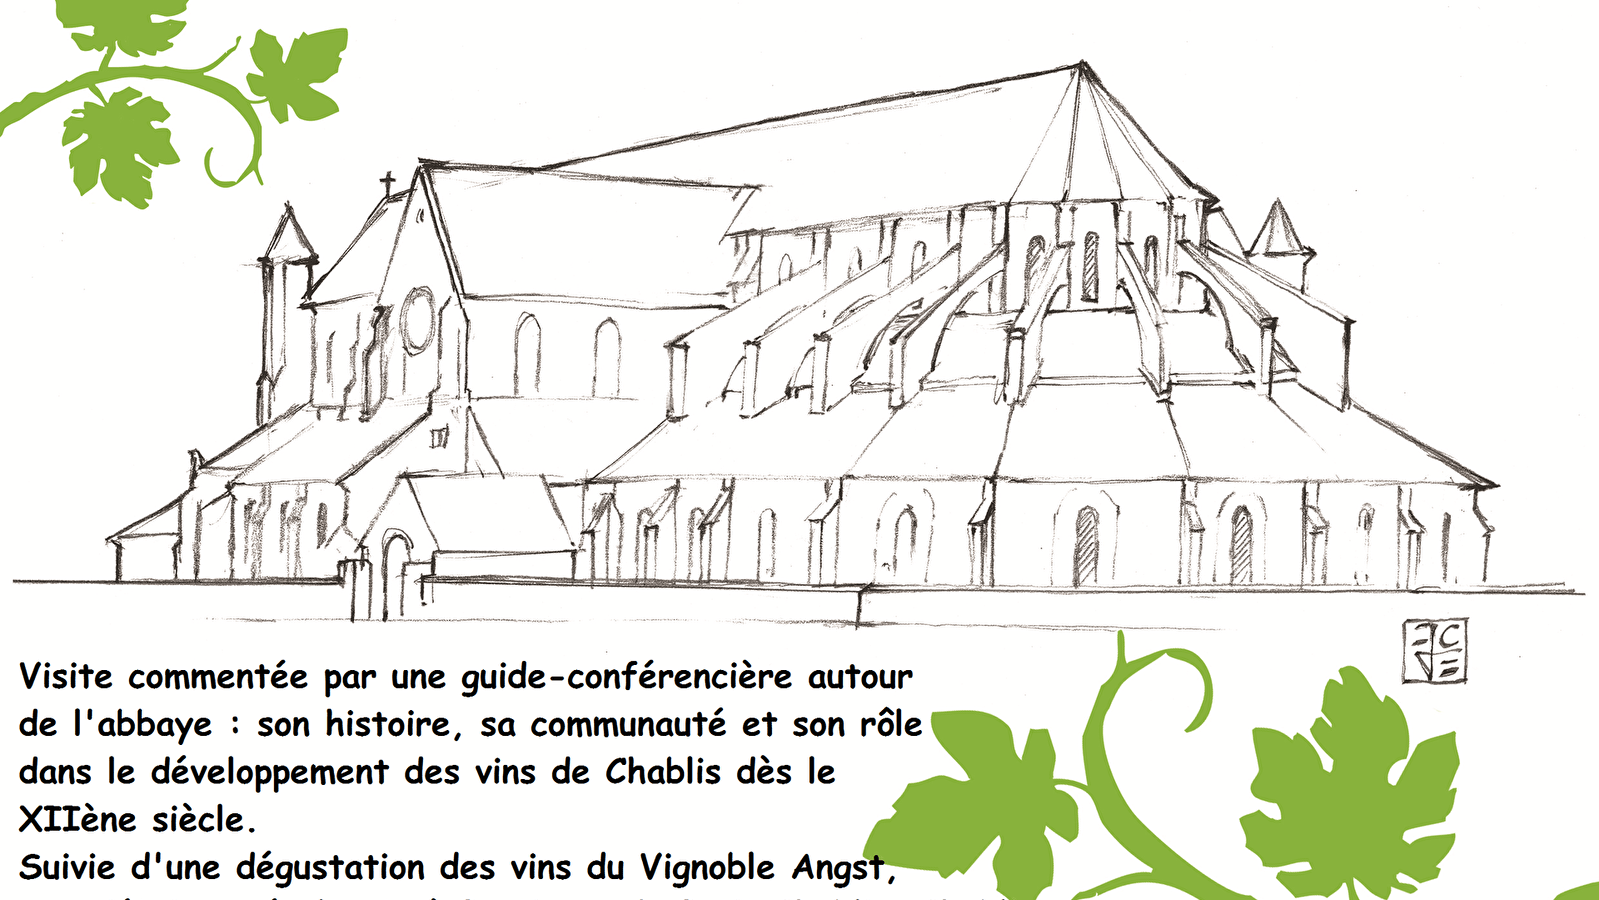 L'Abbaye de Pontigny, aux origines du Chablis